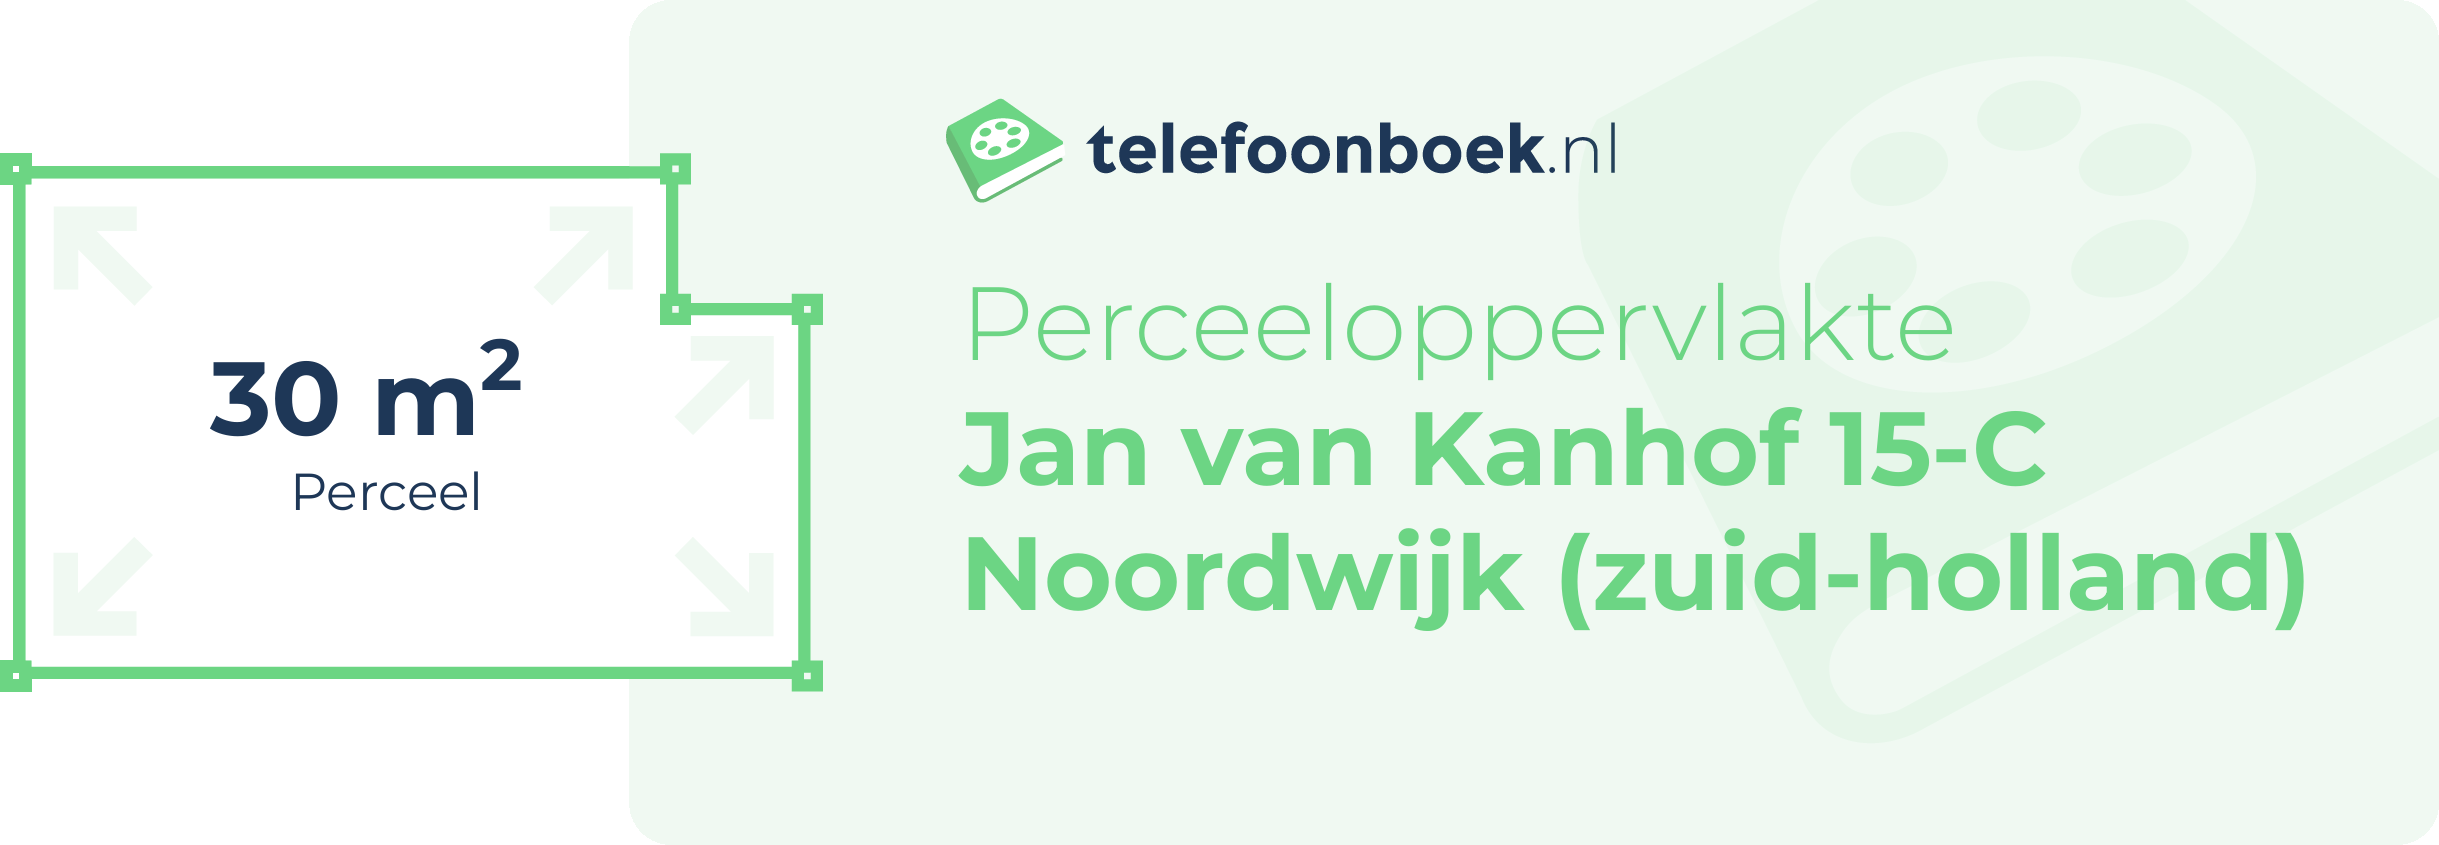 Perceeloppervlakte Jan Van Kanhof 15-C Noordwijk (Zuid-Holland)